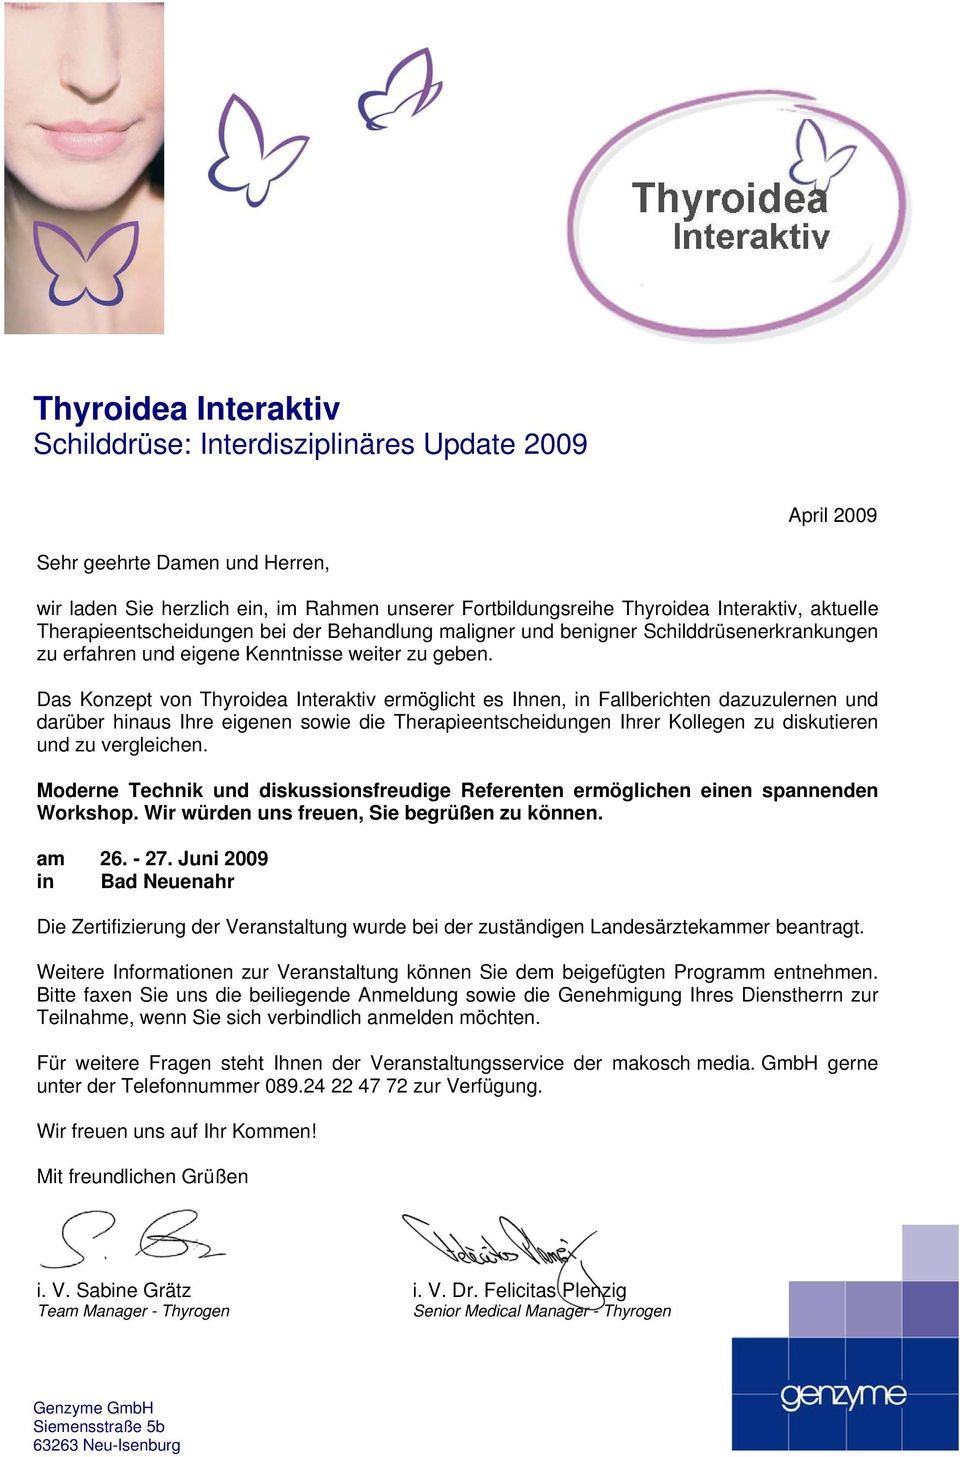 Das Konzept von Thyroidea Interaktiv ermöglicht es Ihnen, in Fallberichten dazuzulernen und darüber hinaus Ihre eigenen sowie die Therapieentscheidungen Ihrer Kollegen zu diskutieren und zu